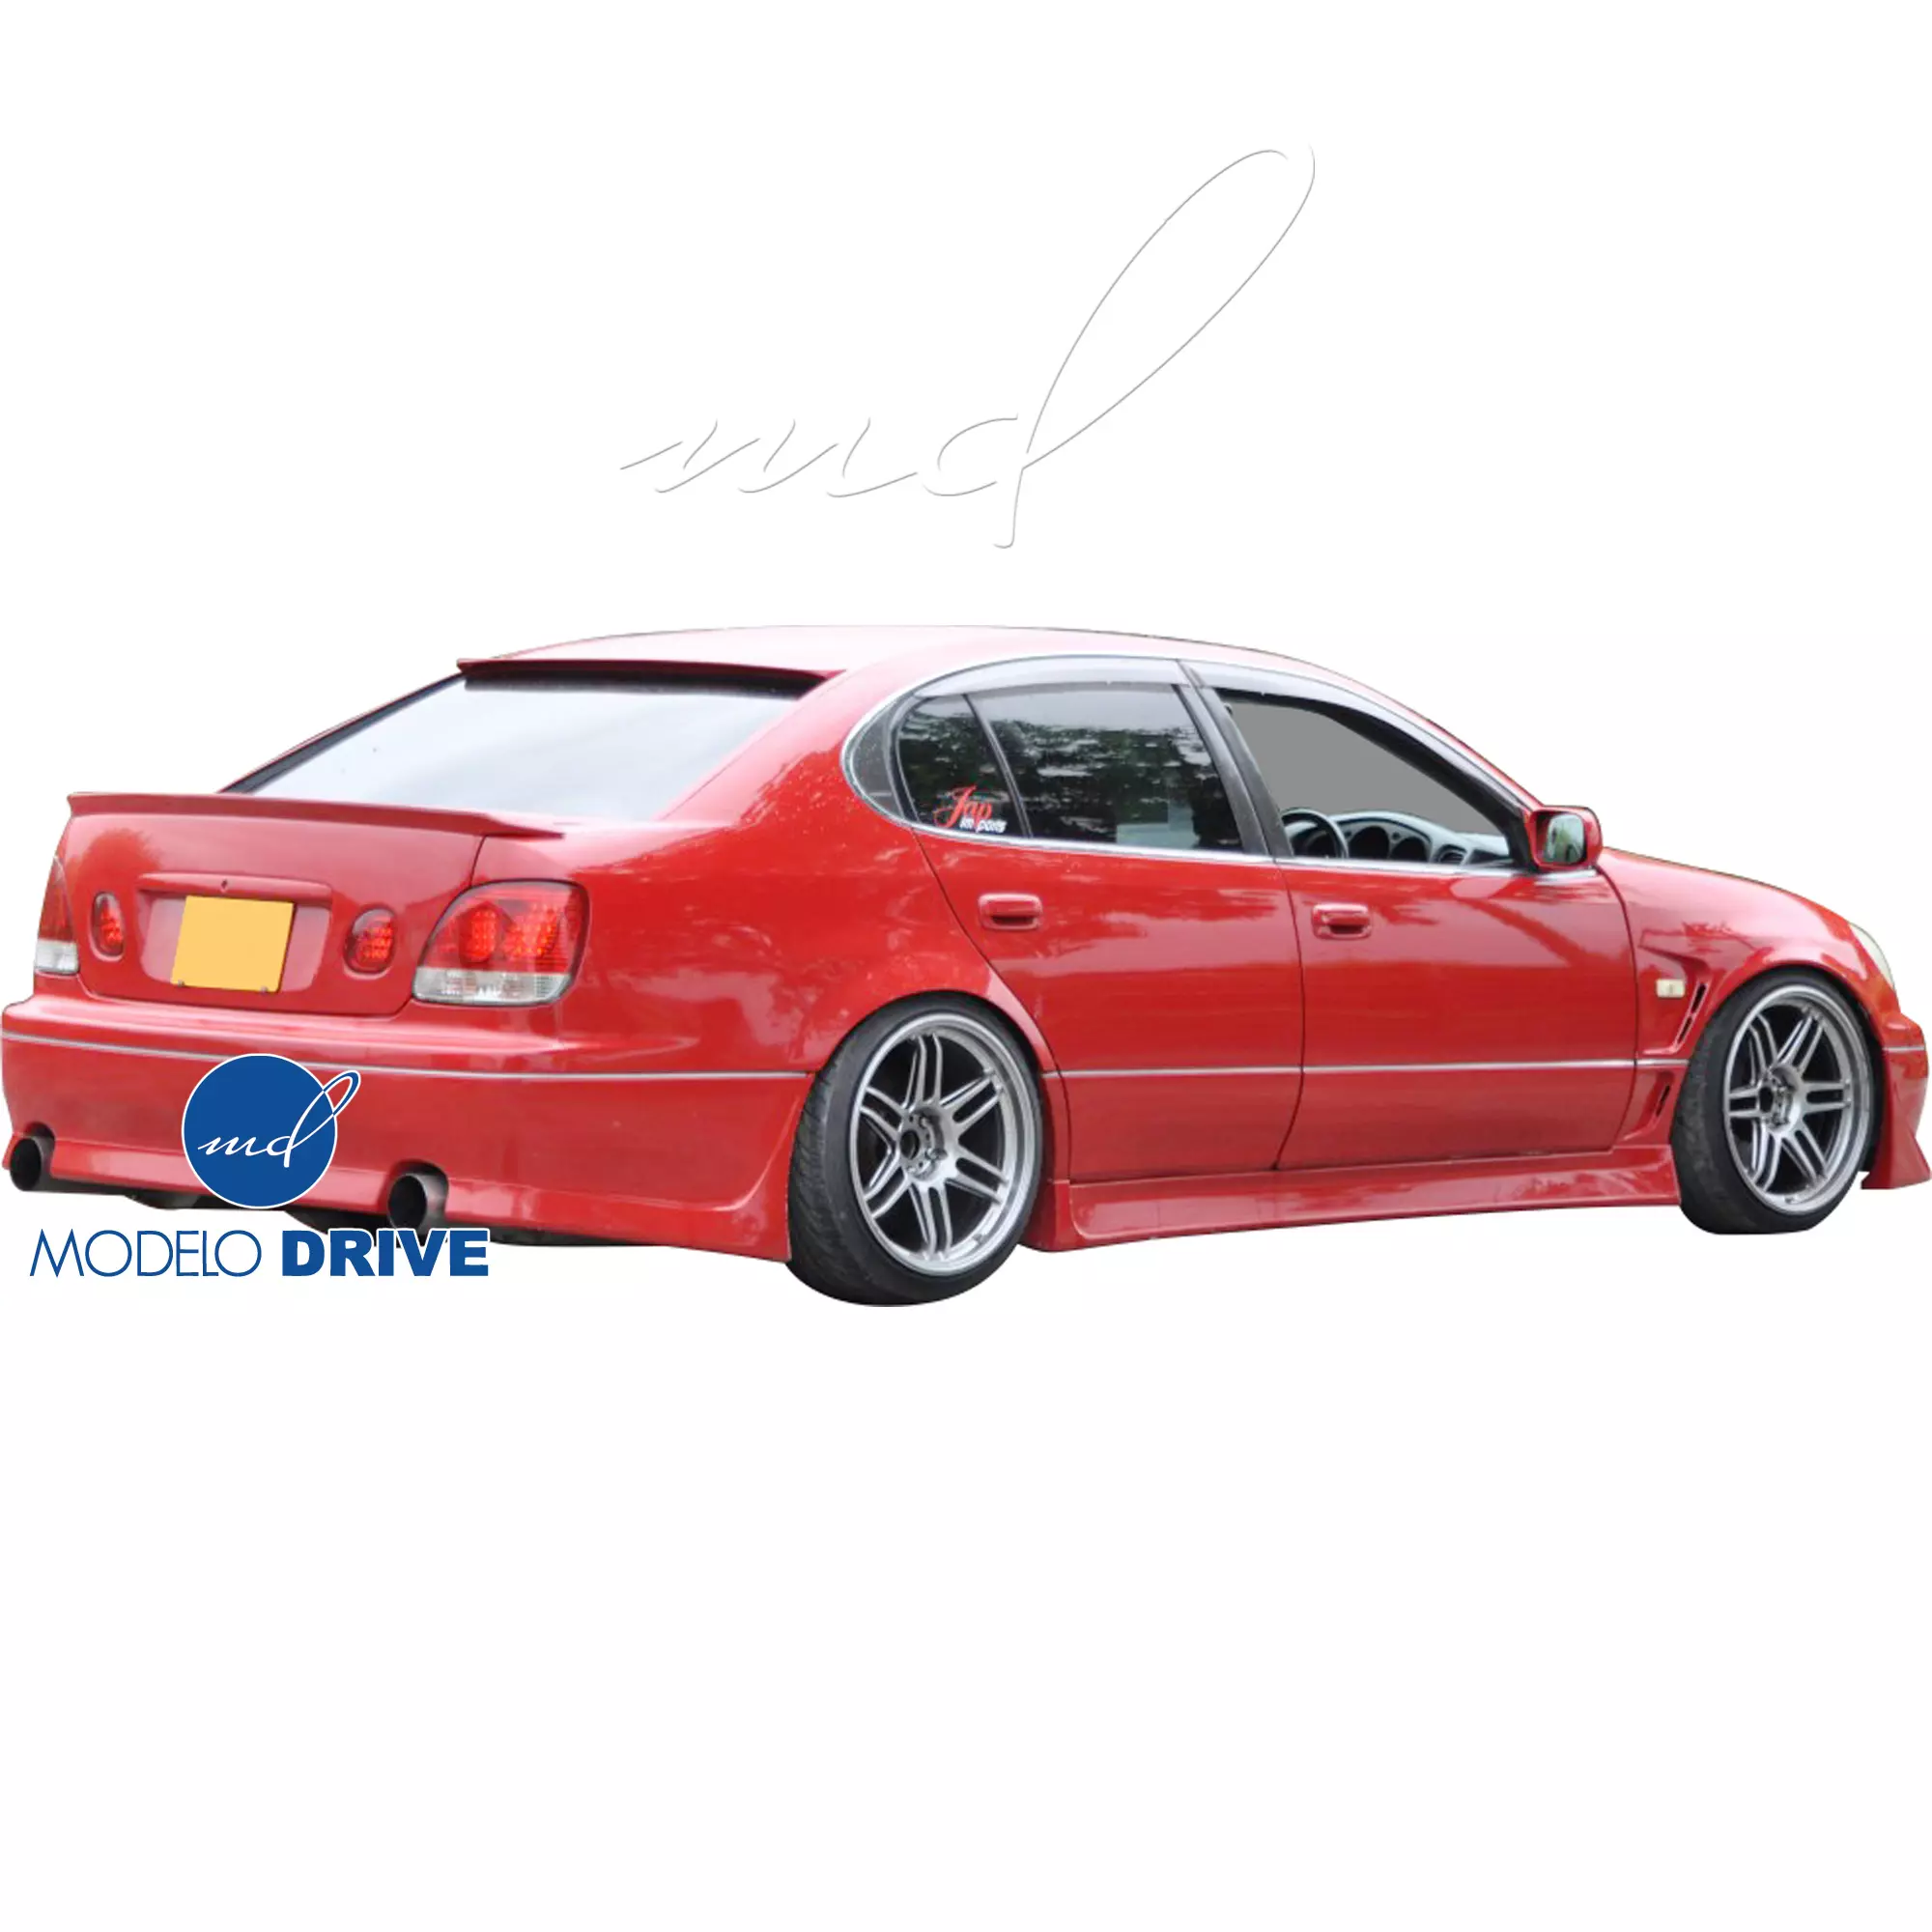 ModeloDrive FRP KAZA Body Kit 4pc > Lexus GS Series GS400 GS300 1998-2005 - Image 54